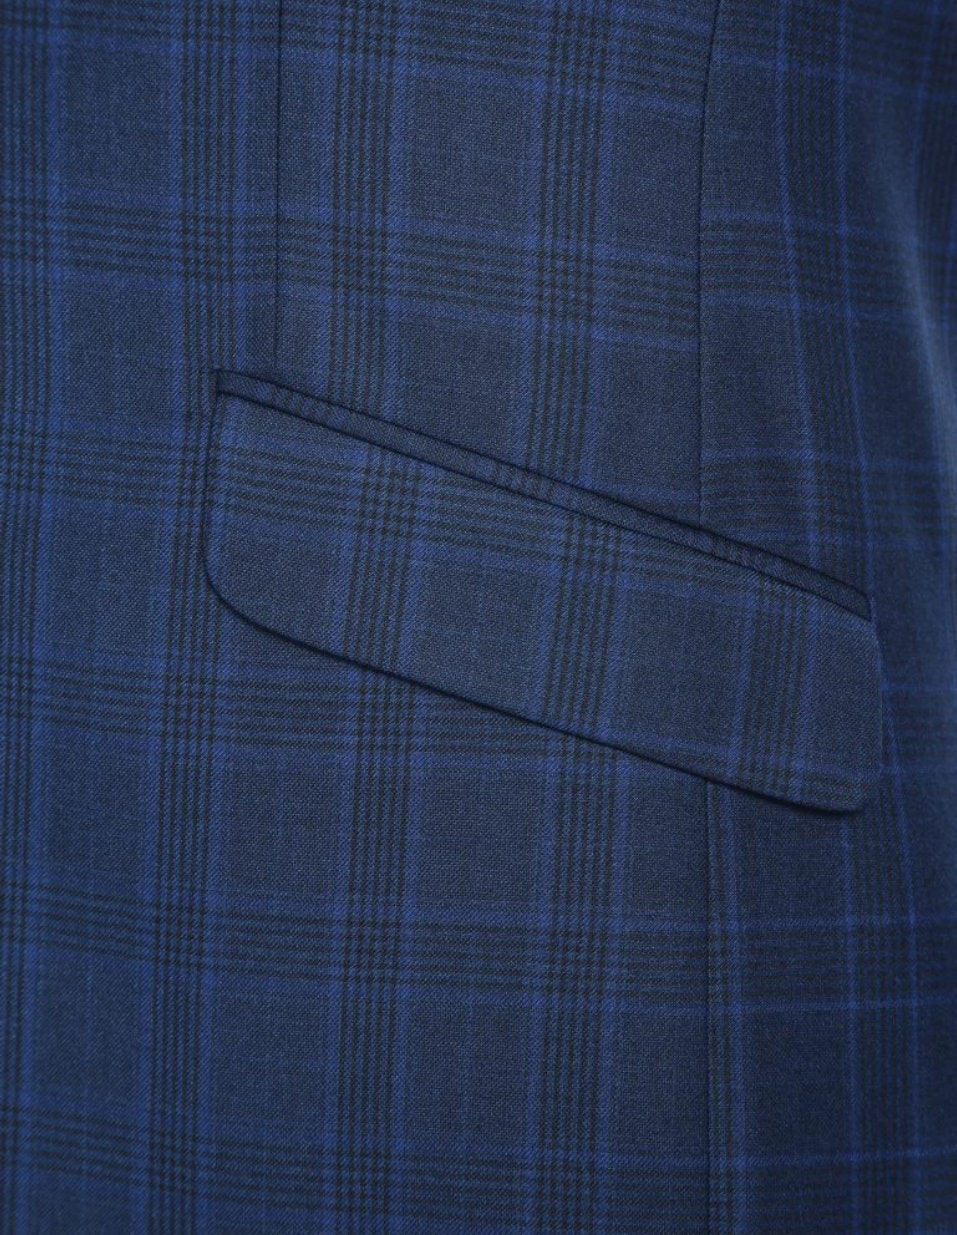 Blue Check Pattern Slim Fit 2 Pc Suit